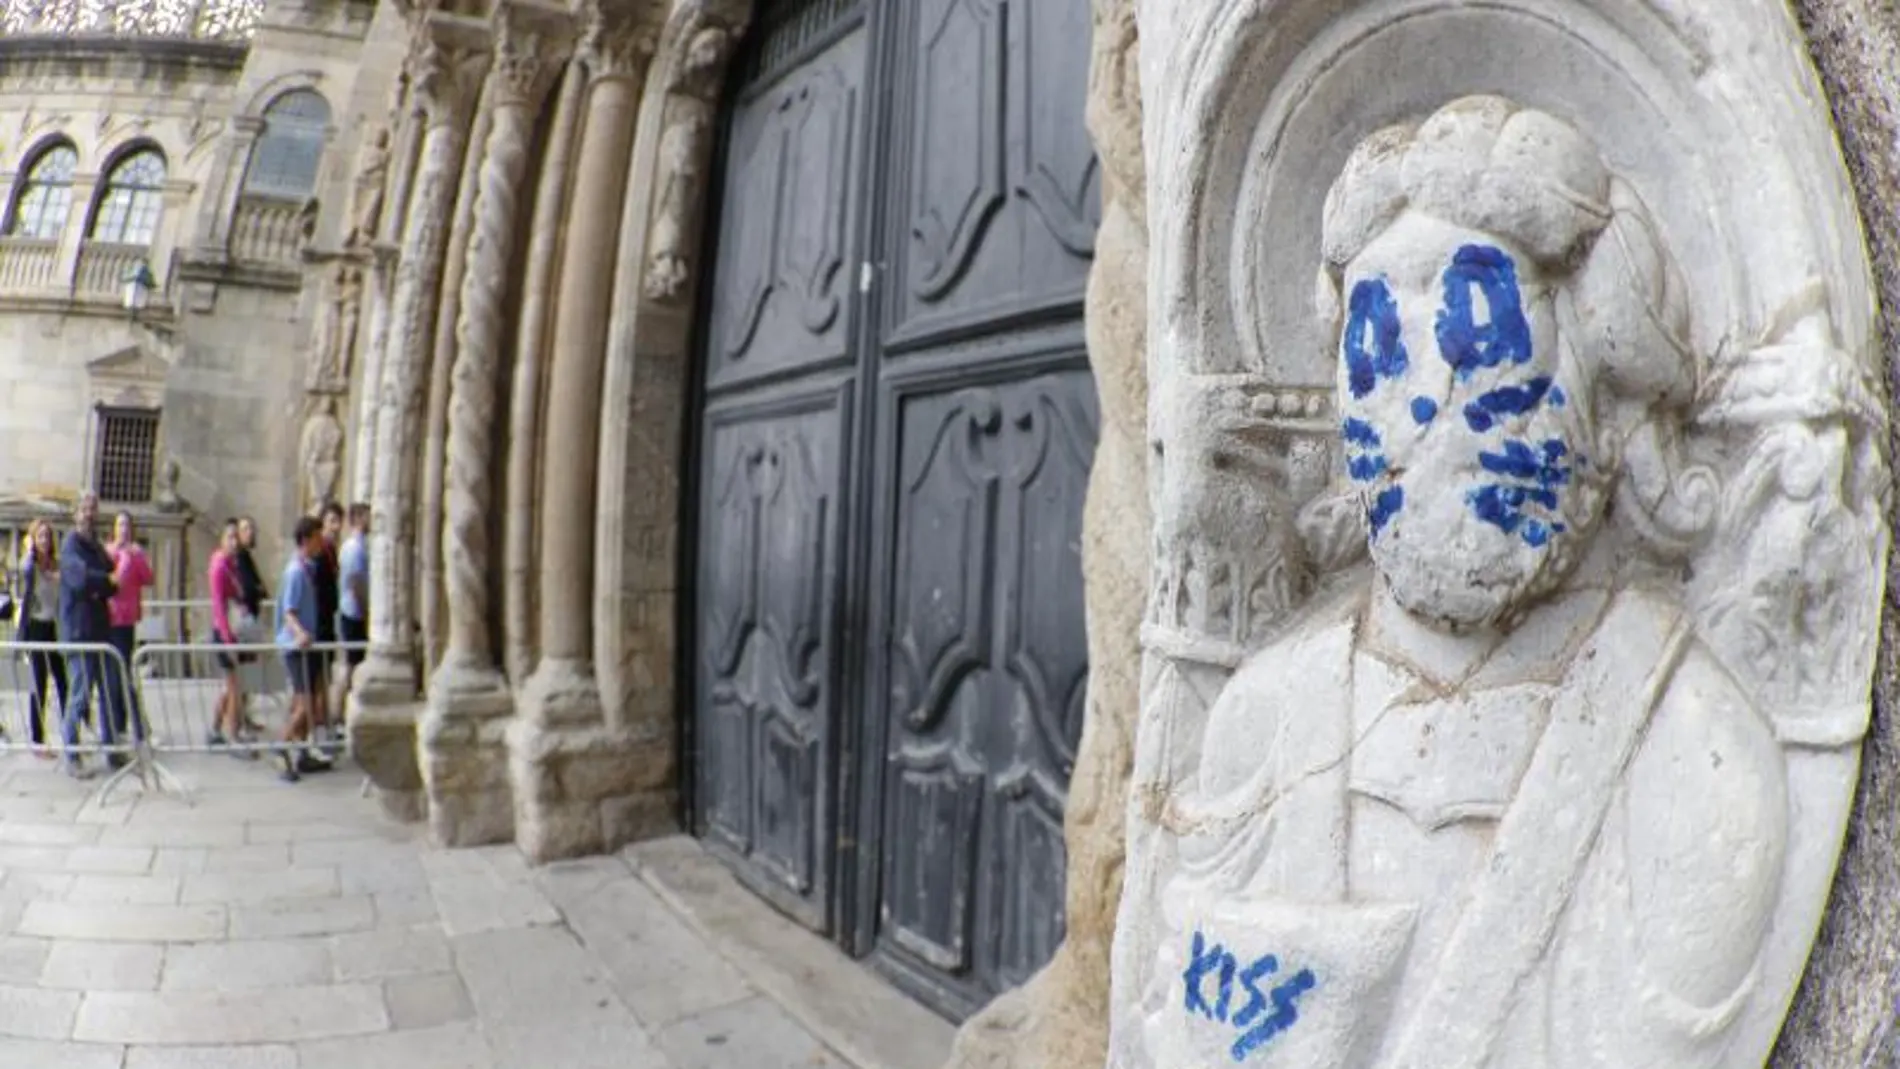 La fachada de Platerías de la catedral de Santiago de Compostela ha aparecido esta mañana con un grafiti en una de sus figuras, que aparece pintada emulando a uno de los miembros de Kiss